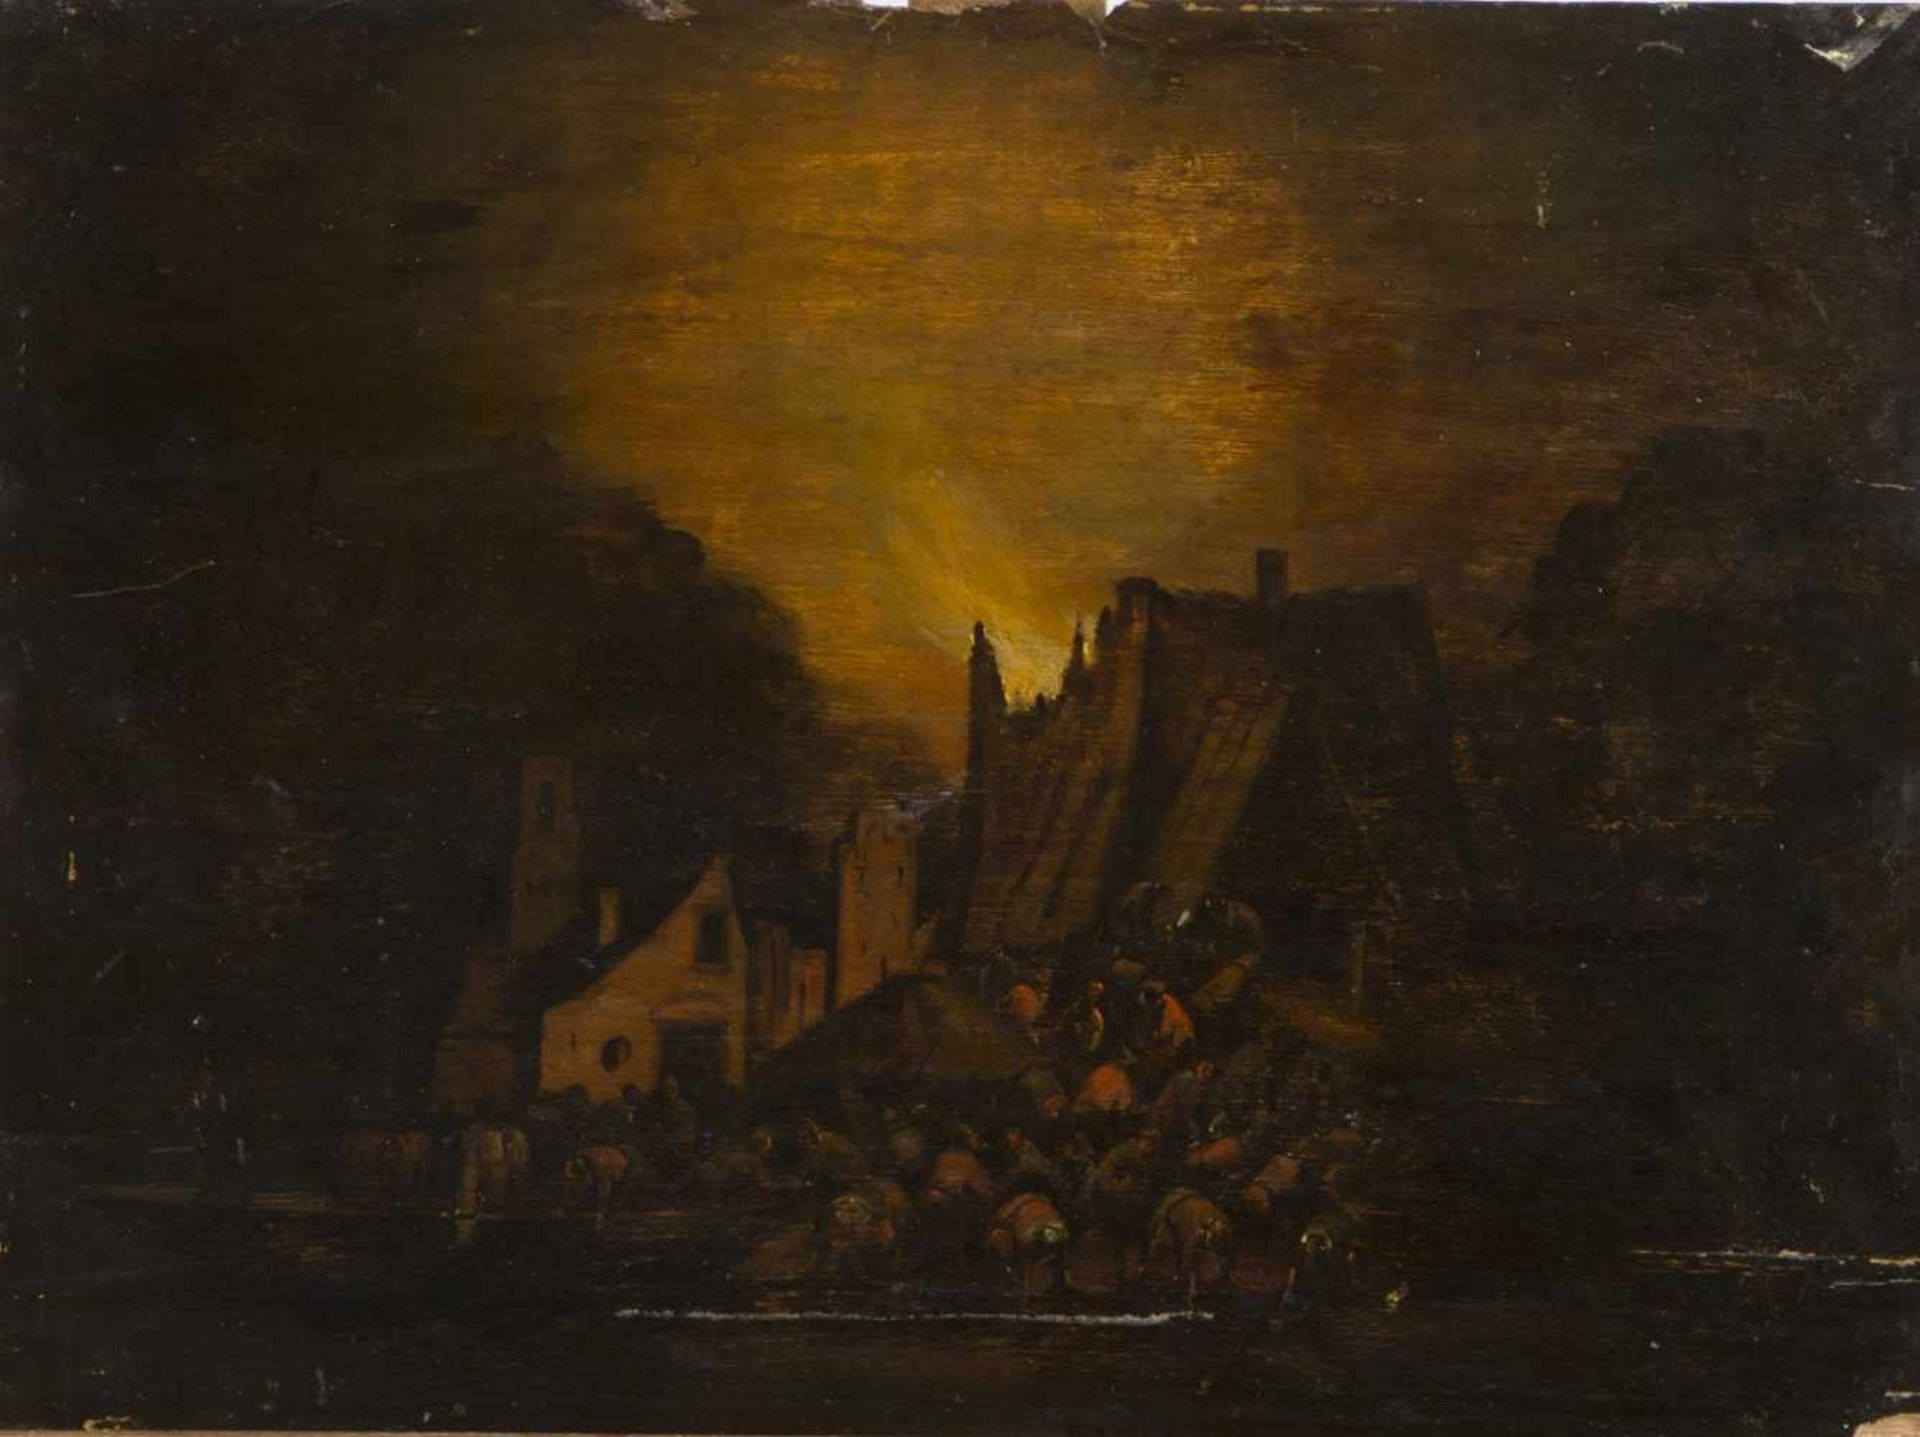 Poel, Egbert Lievensz van der. 1621 Delft - Rotterdam 1664Brand in der Nacht. Öl/Holz. 37 x 49,5 cm.